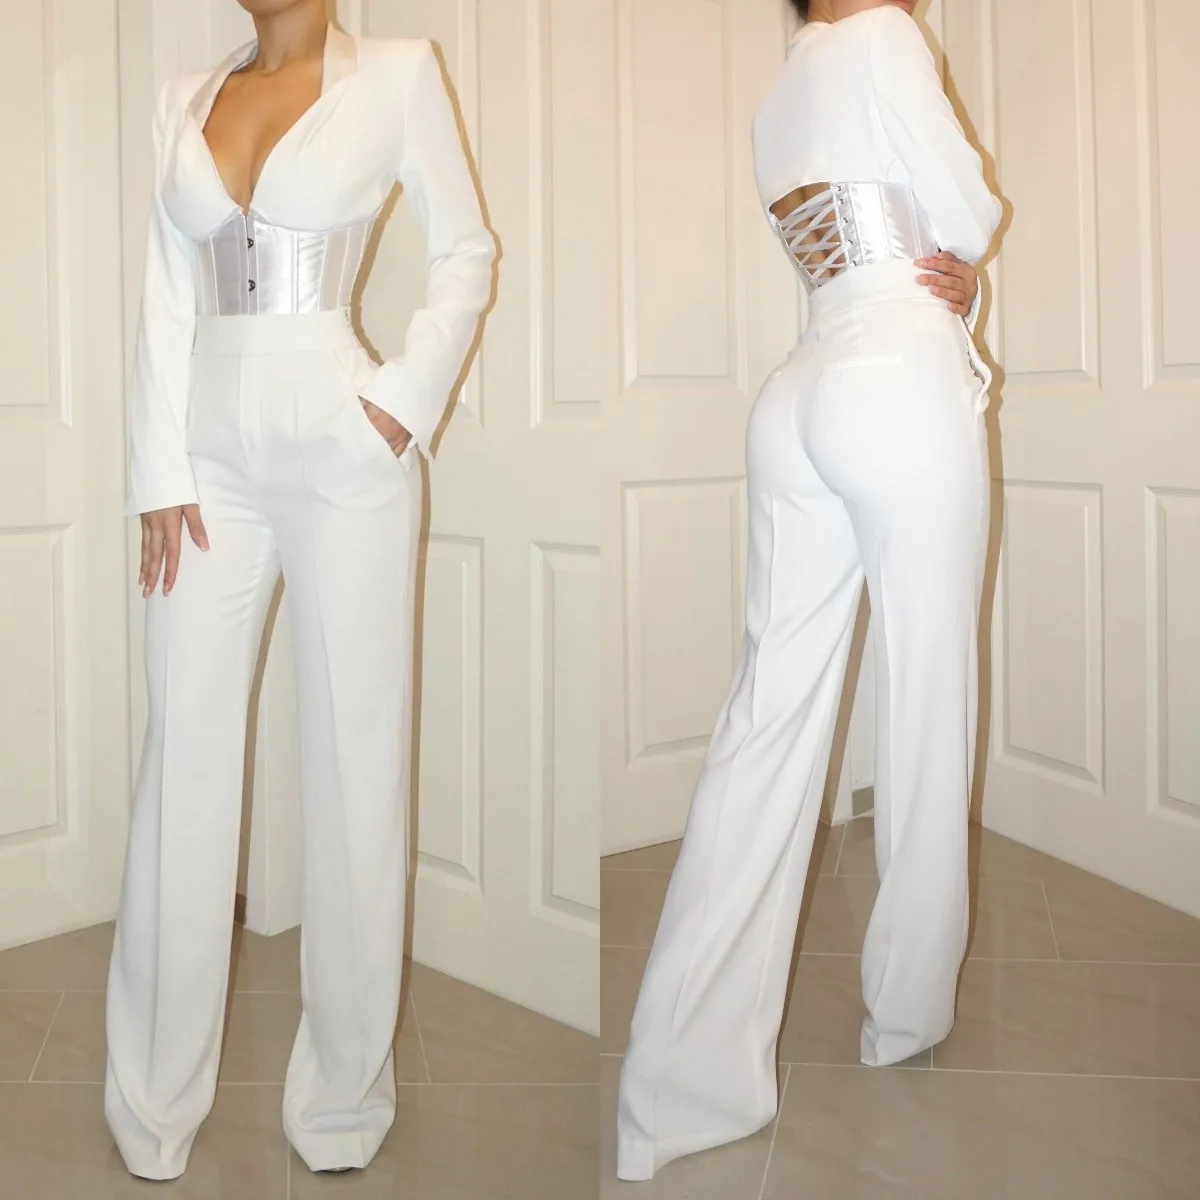 2 Pcs White Prom Dresses Pant Suit Corset Top Long Evening Gowns Lace ...